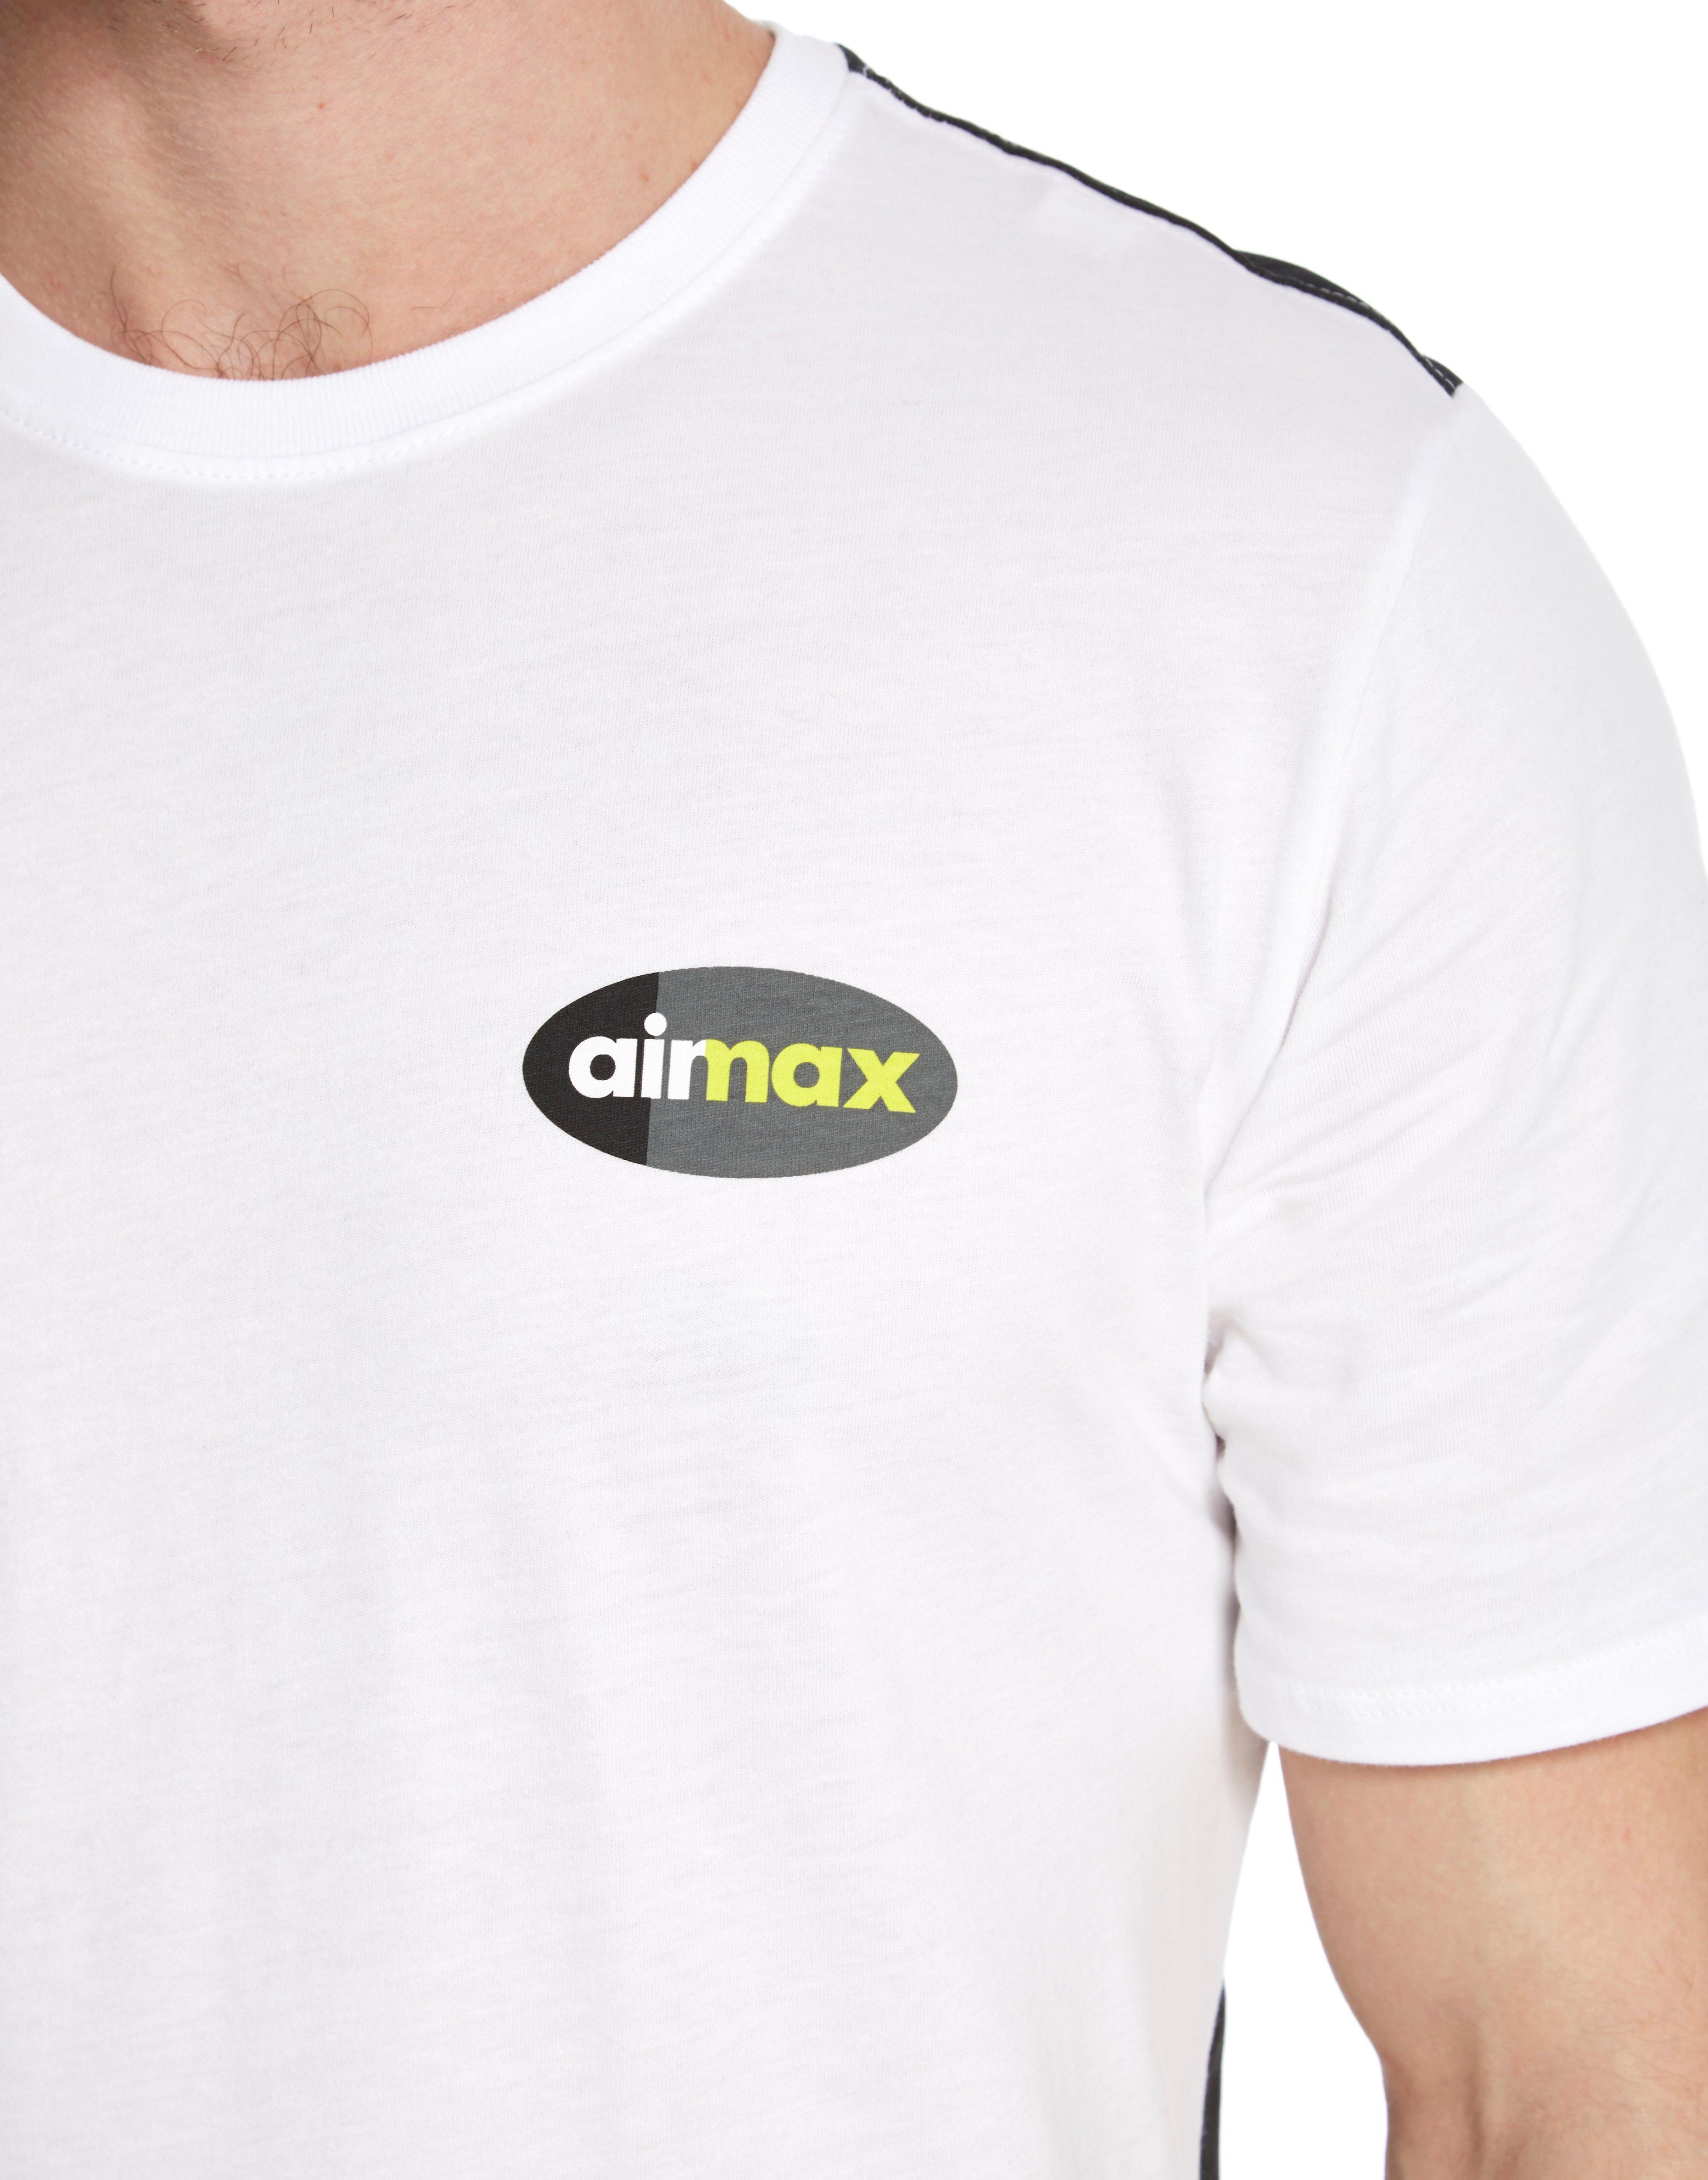 air max 95 neon shirt